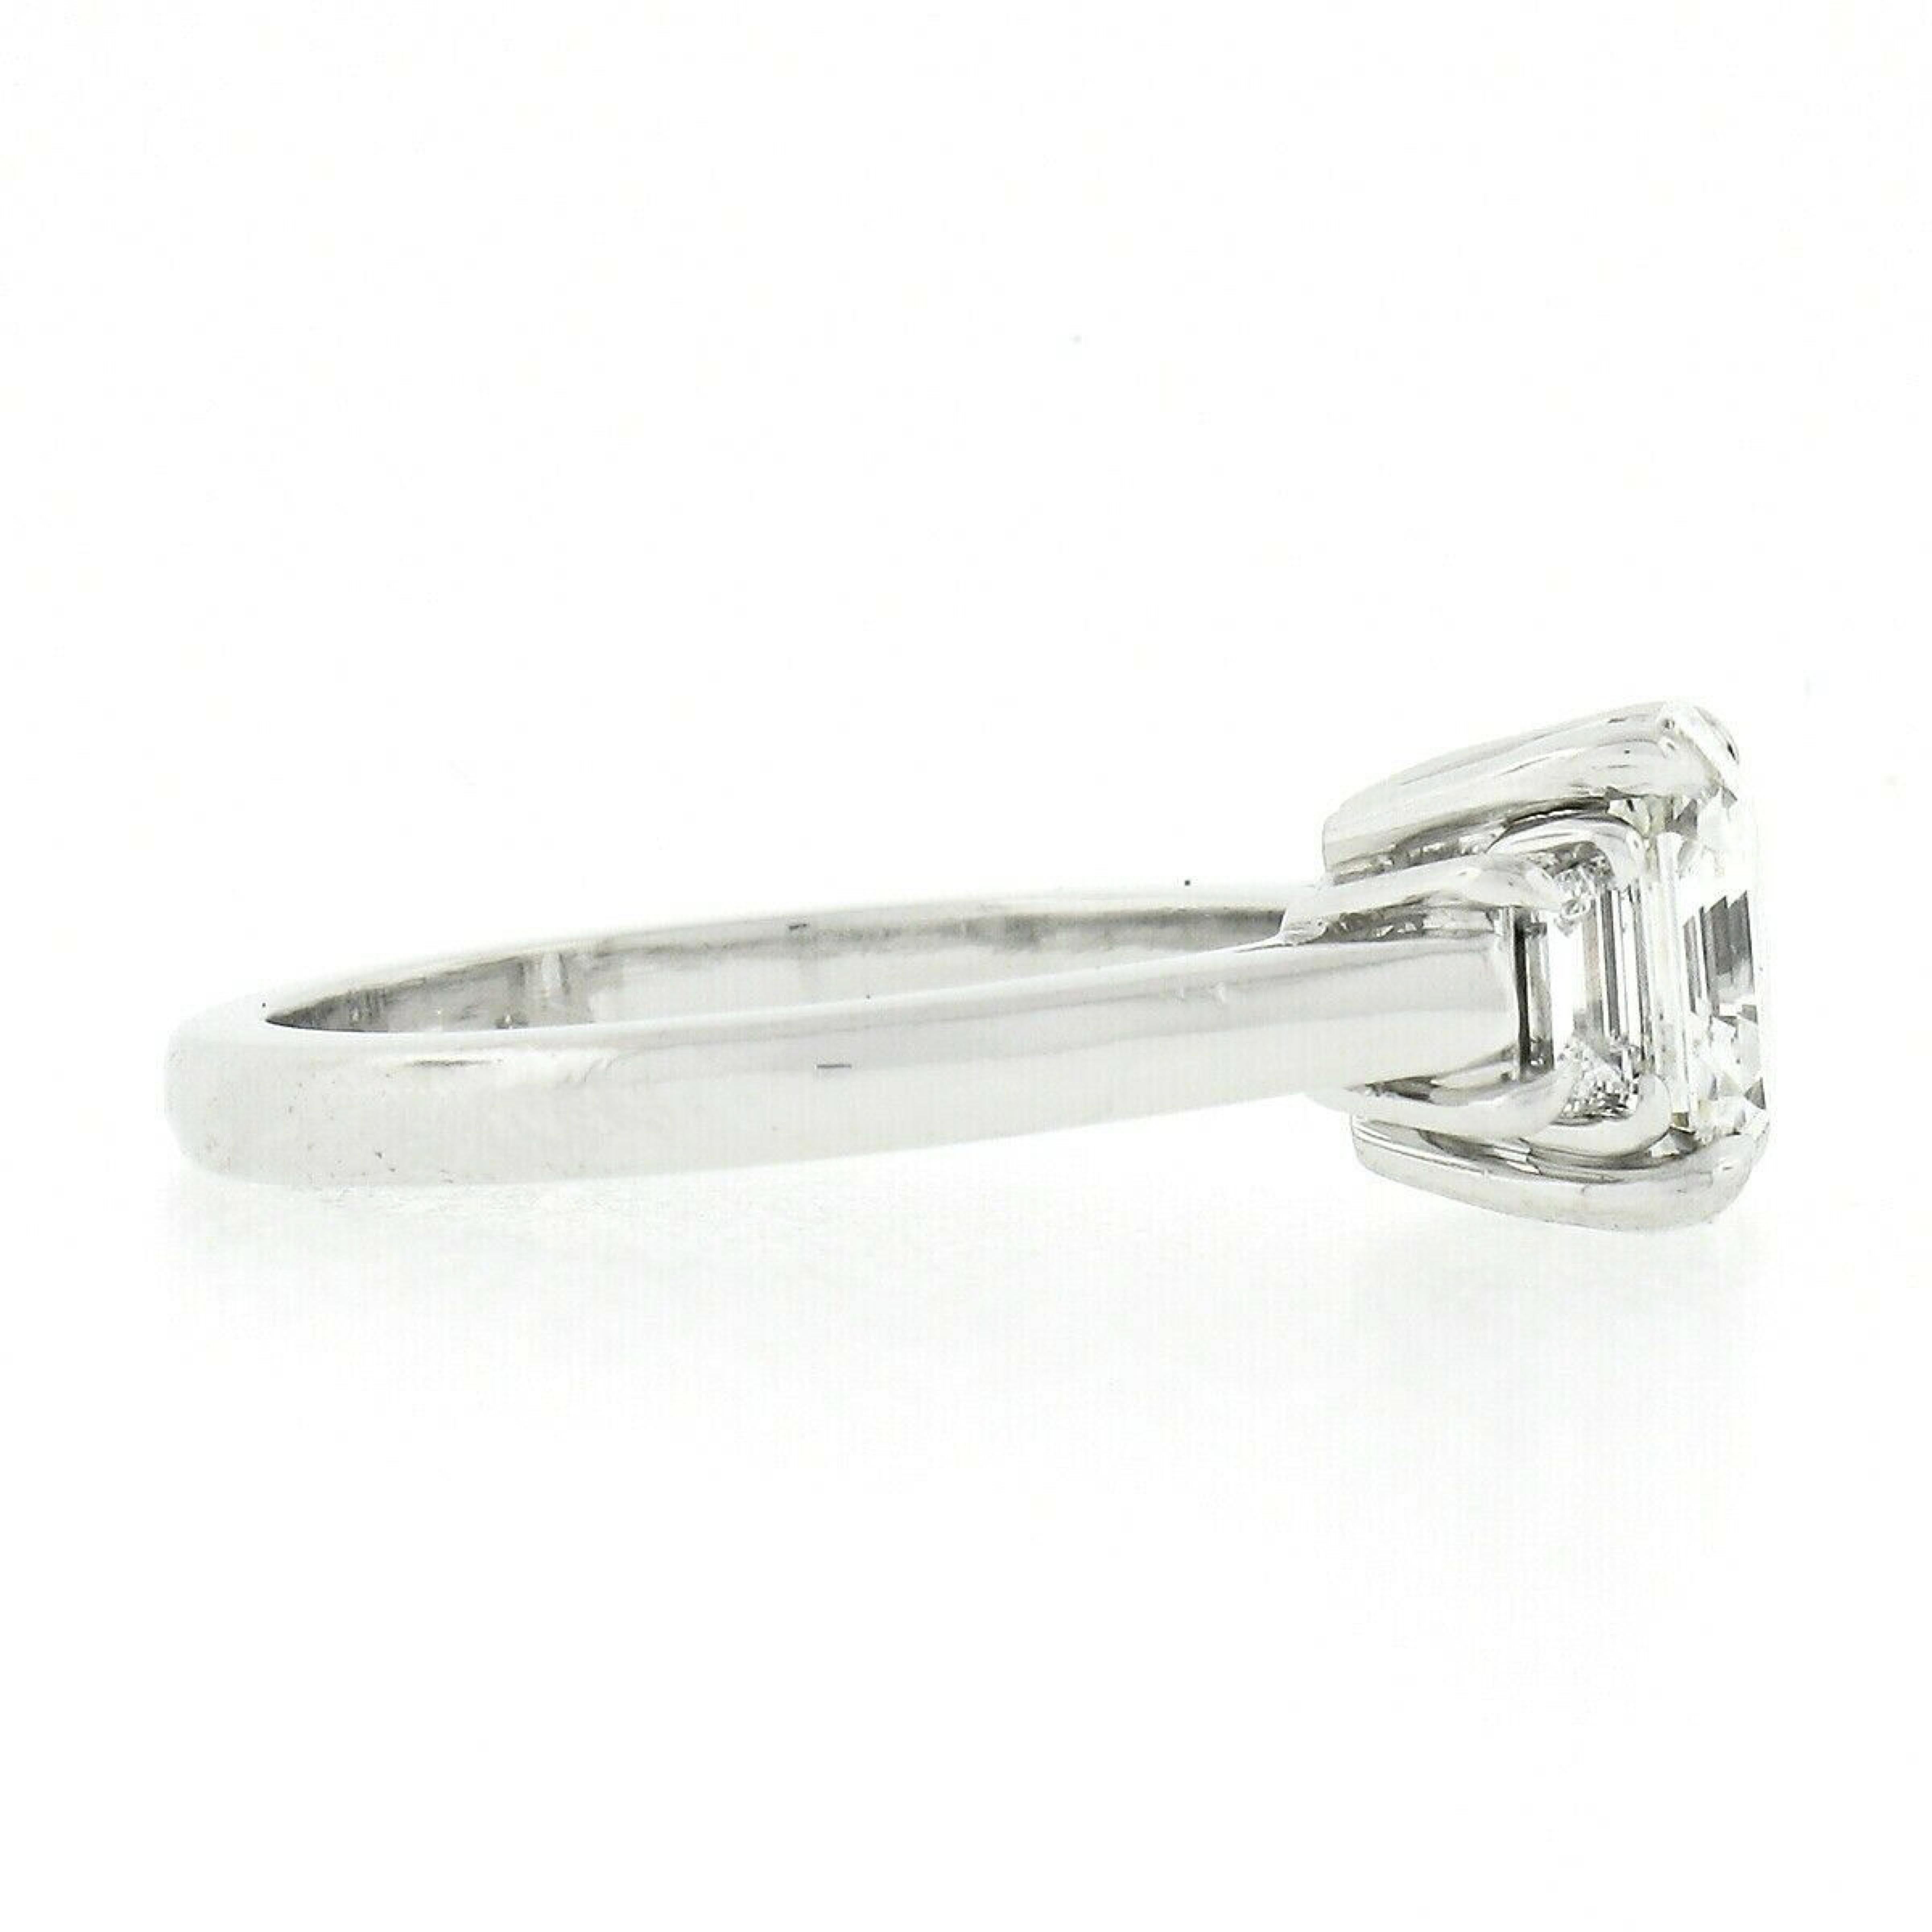 asscher cut diamond ring with trapezoids